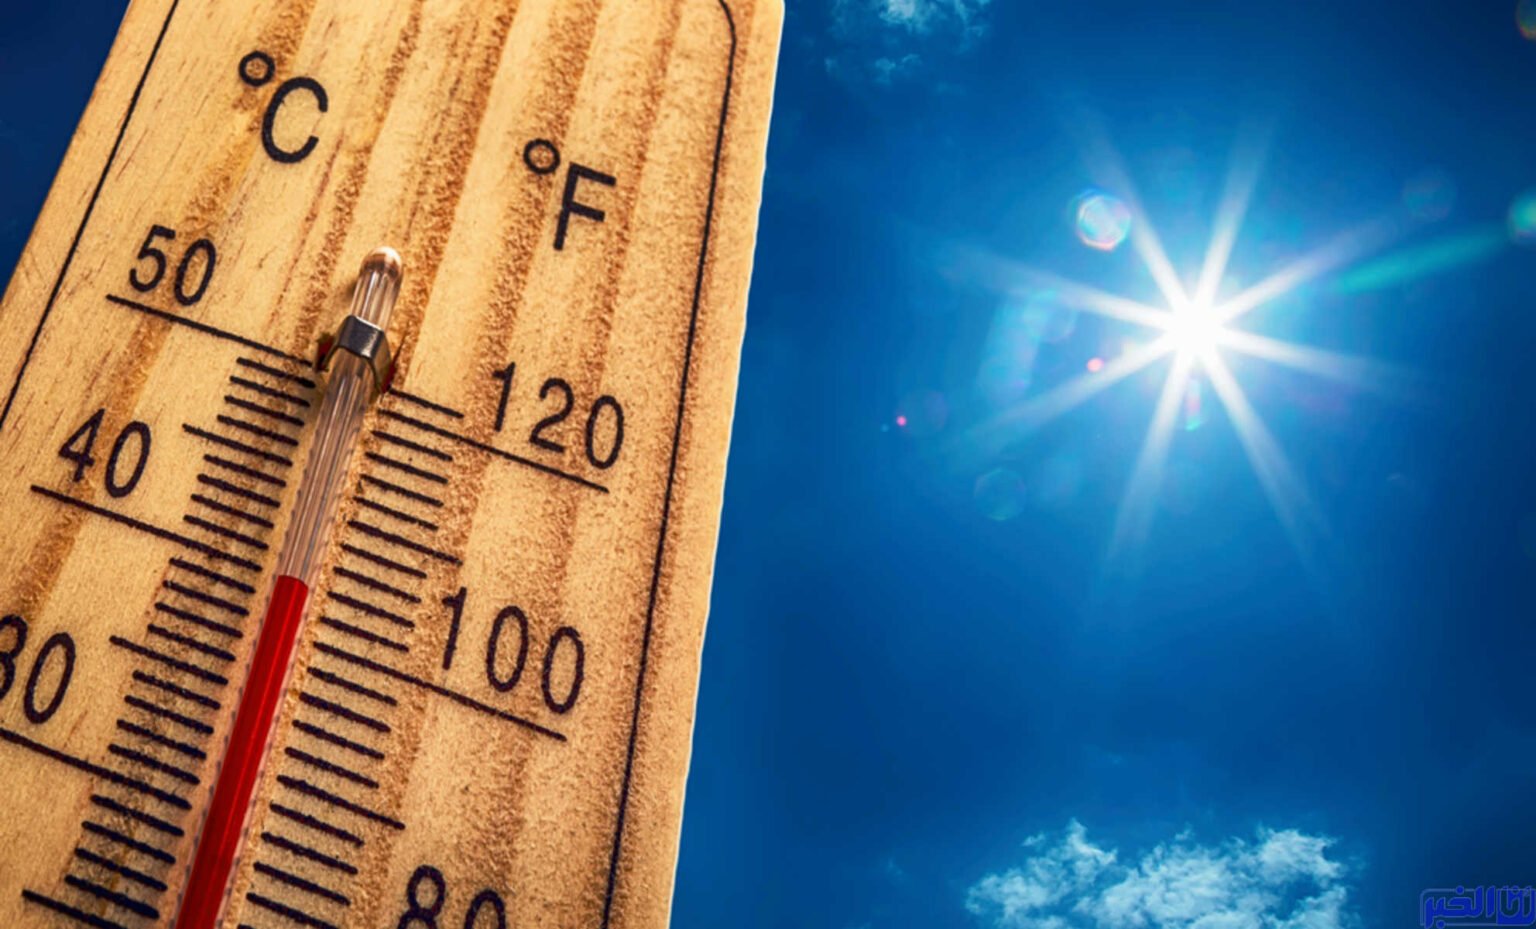 درجات الحرارة الدنيا والعليا المرتقبة اليوم الخميس